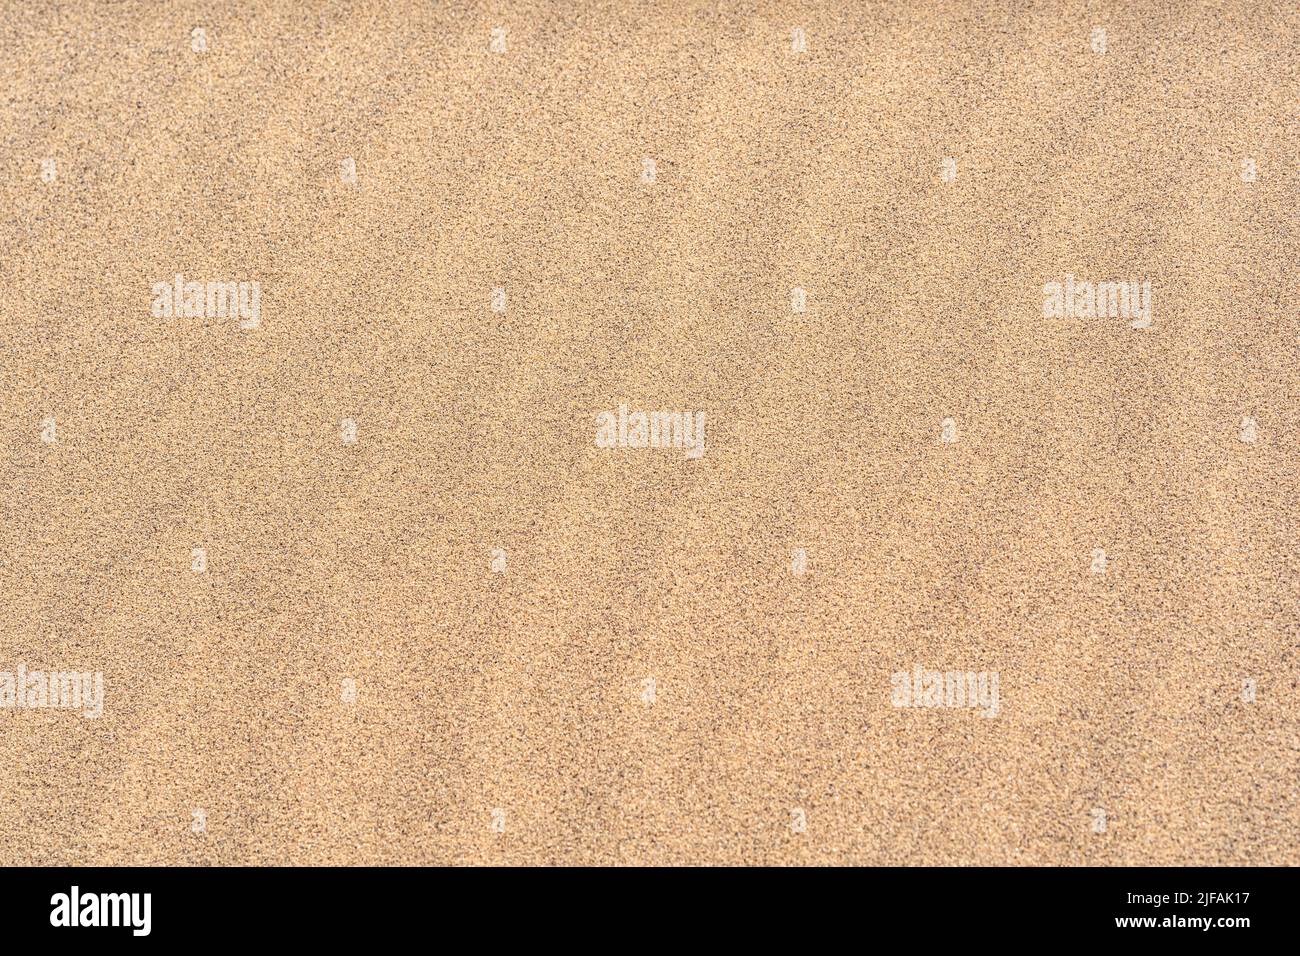 sfondo - giallo sabbia deserto primo piano Foto Stock